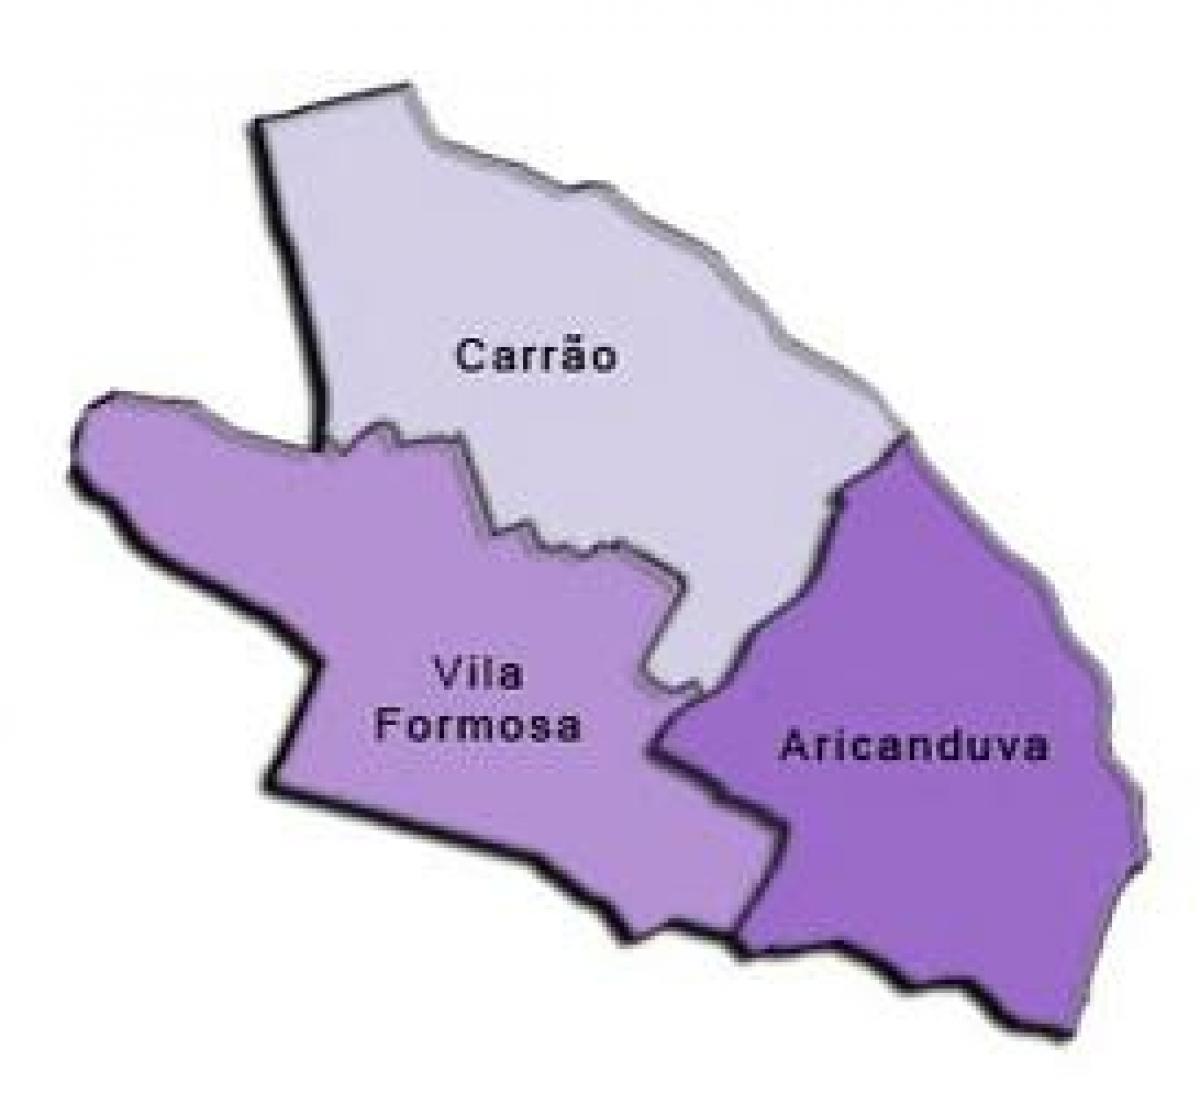 Mapa de Aricanduva-Vila Formosa sub-concello